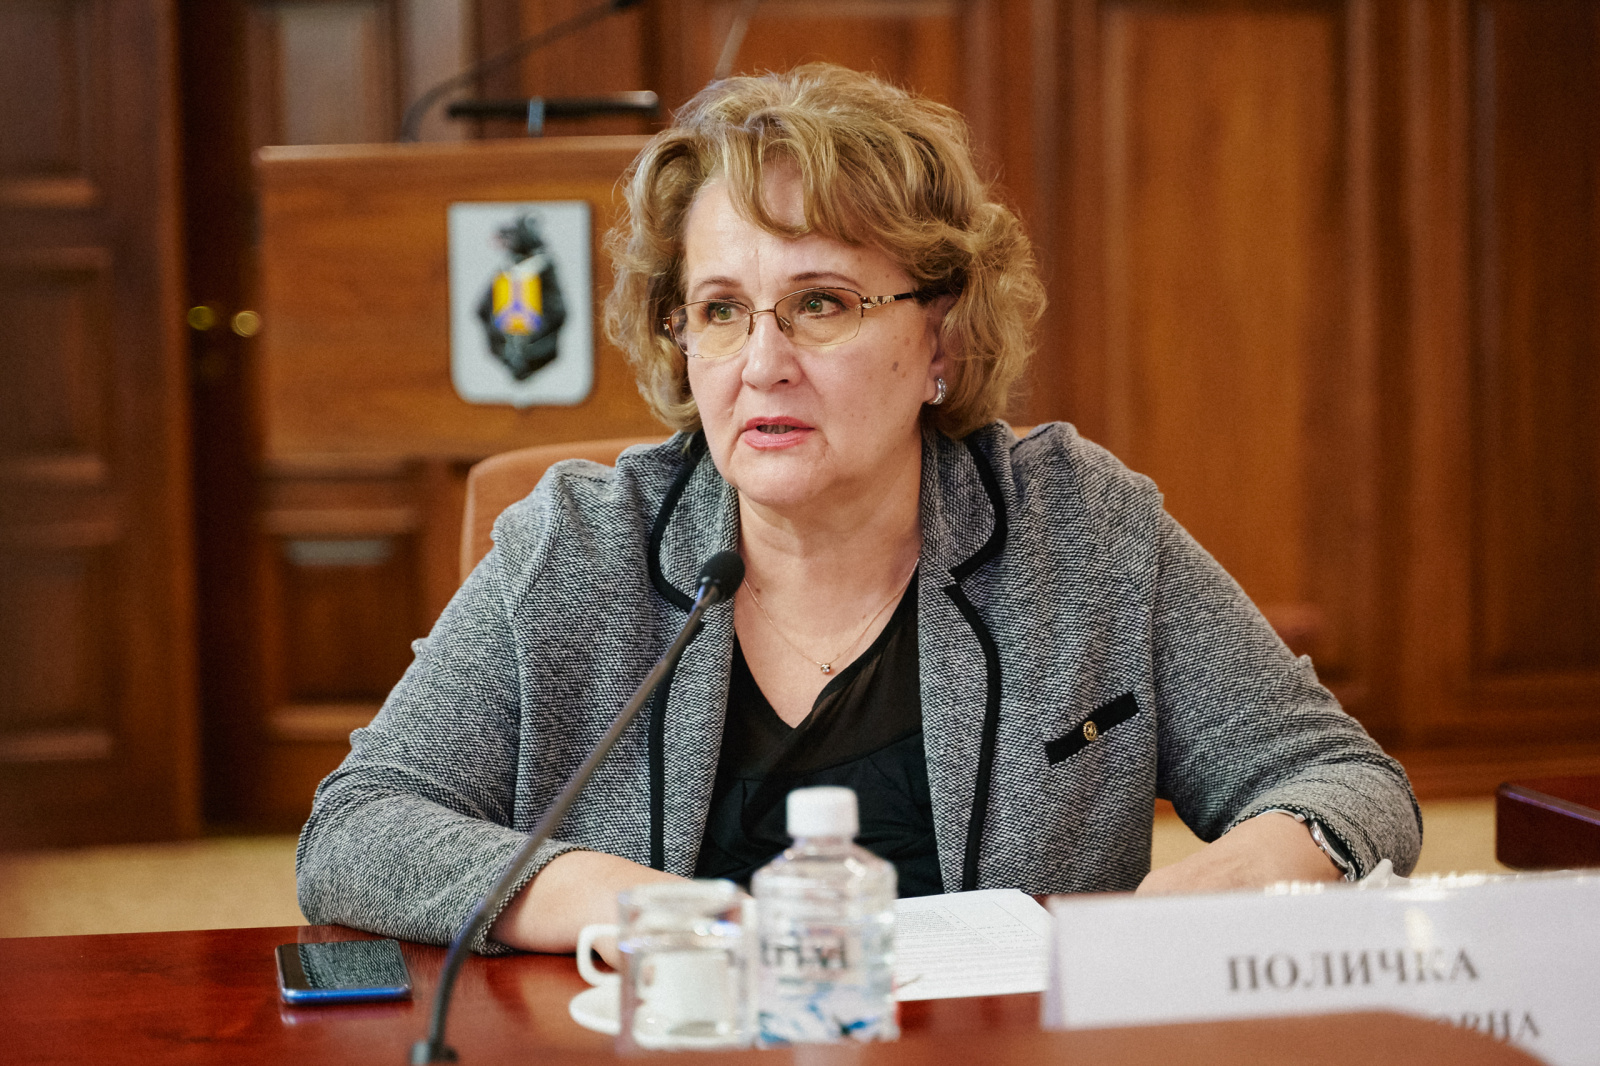 Нина Поличка: «В первоочередном порядке следует разработать минимальные федеральные стандарты социального обслуживания». ЕвроМедиа